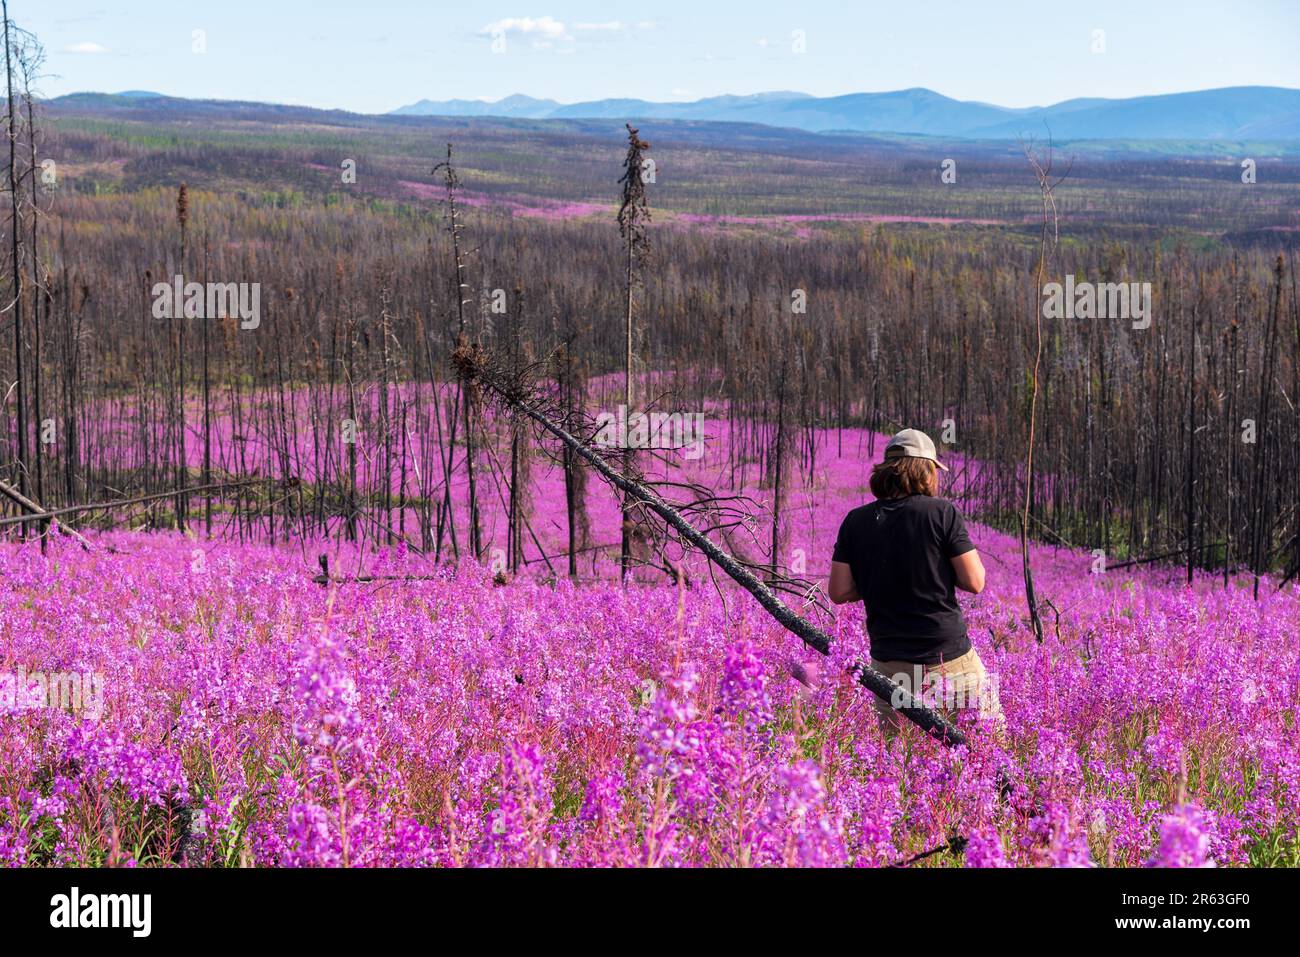 Ein Mann mit langen braunen Haaren, der im Sommer auf einem Feld mit tausenden lila rosa Blumen herumläuft. Wald regeneriert sich nach einem Waldbrand. Stockfoto